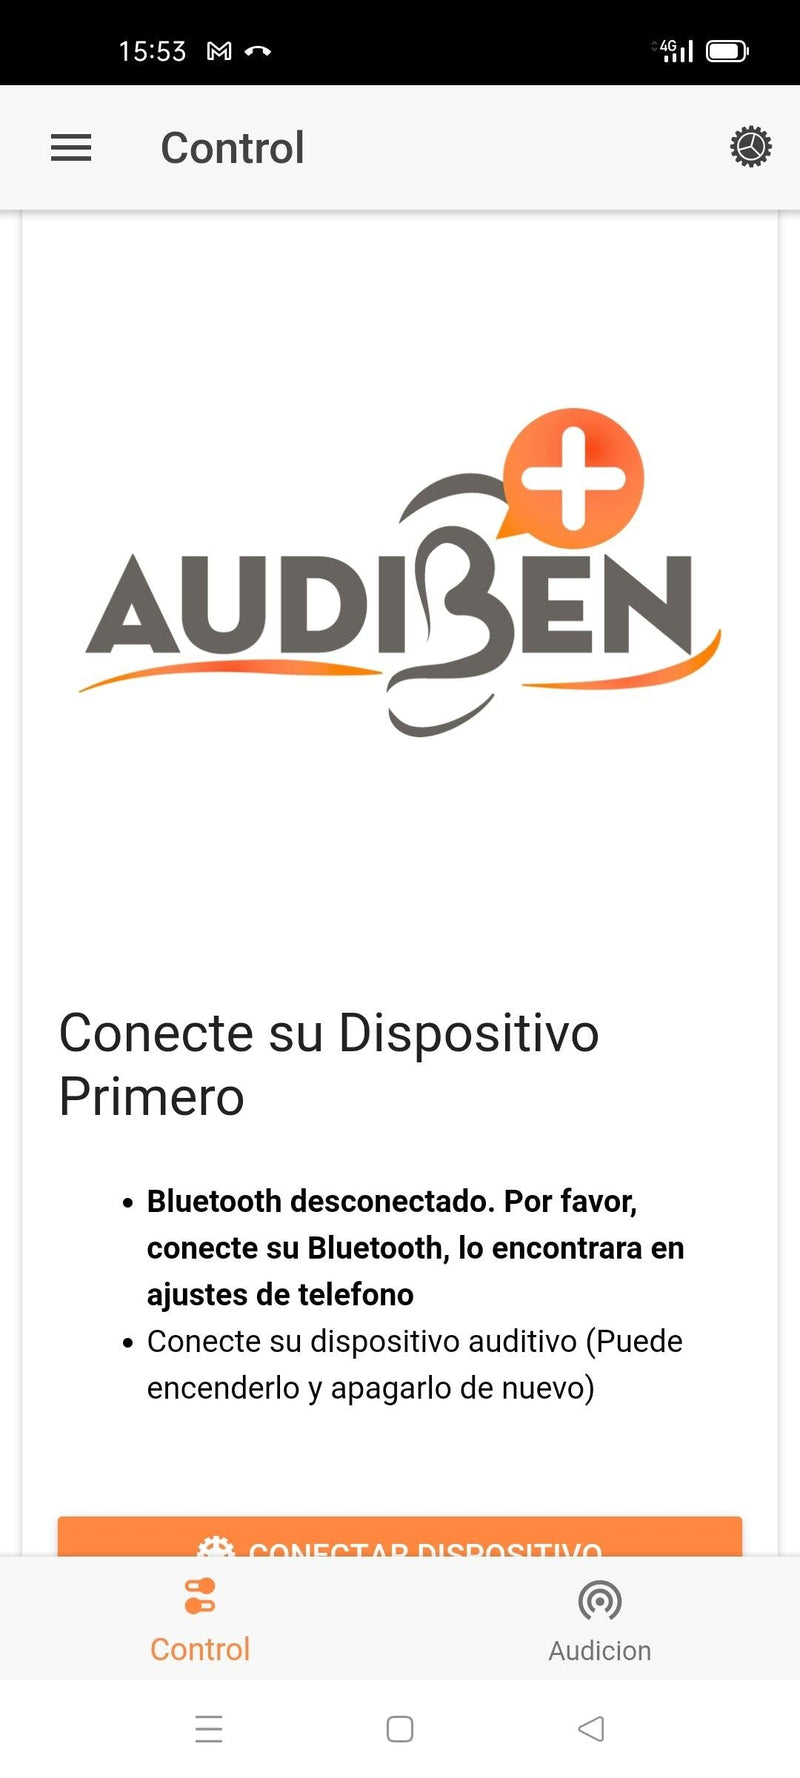 Auriculares amplificadores de sonido - Audiben 403 (Dispone de App) - Audioactive